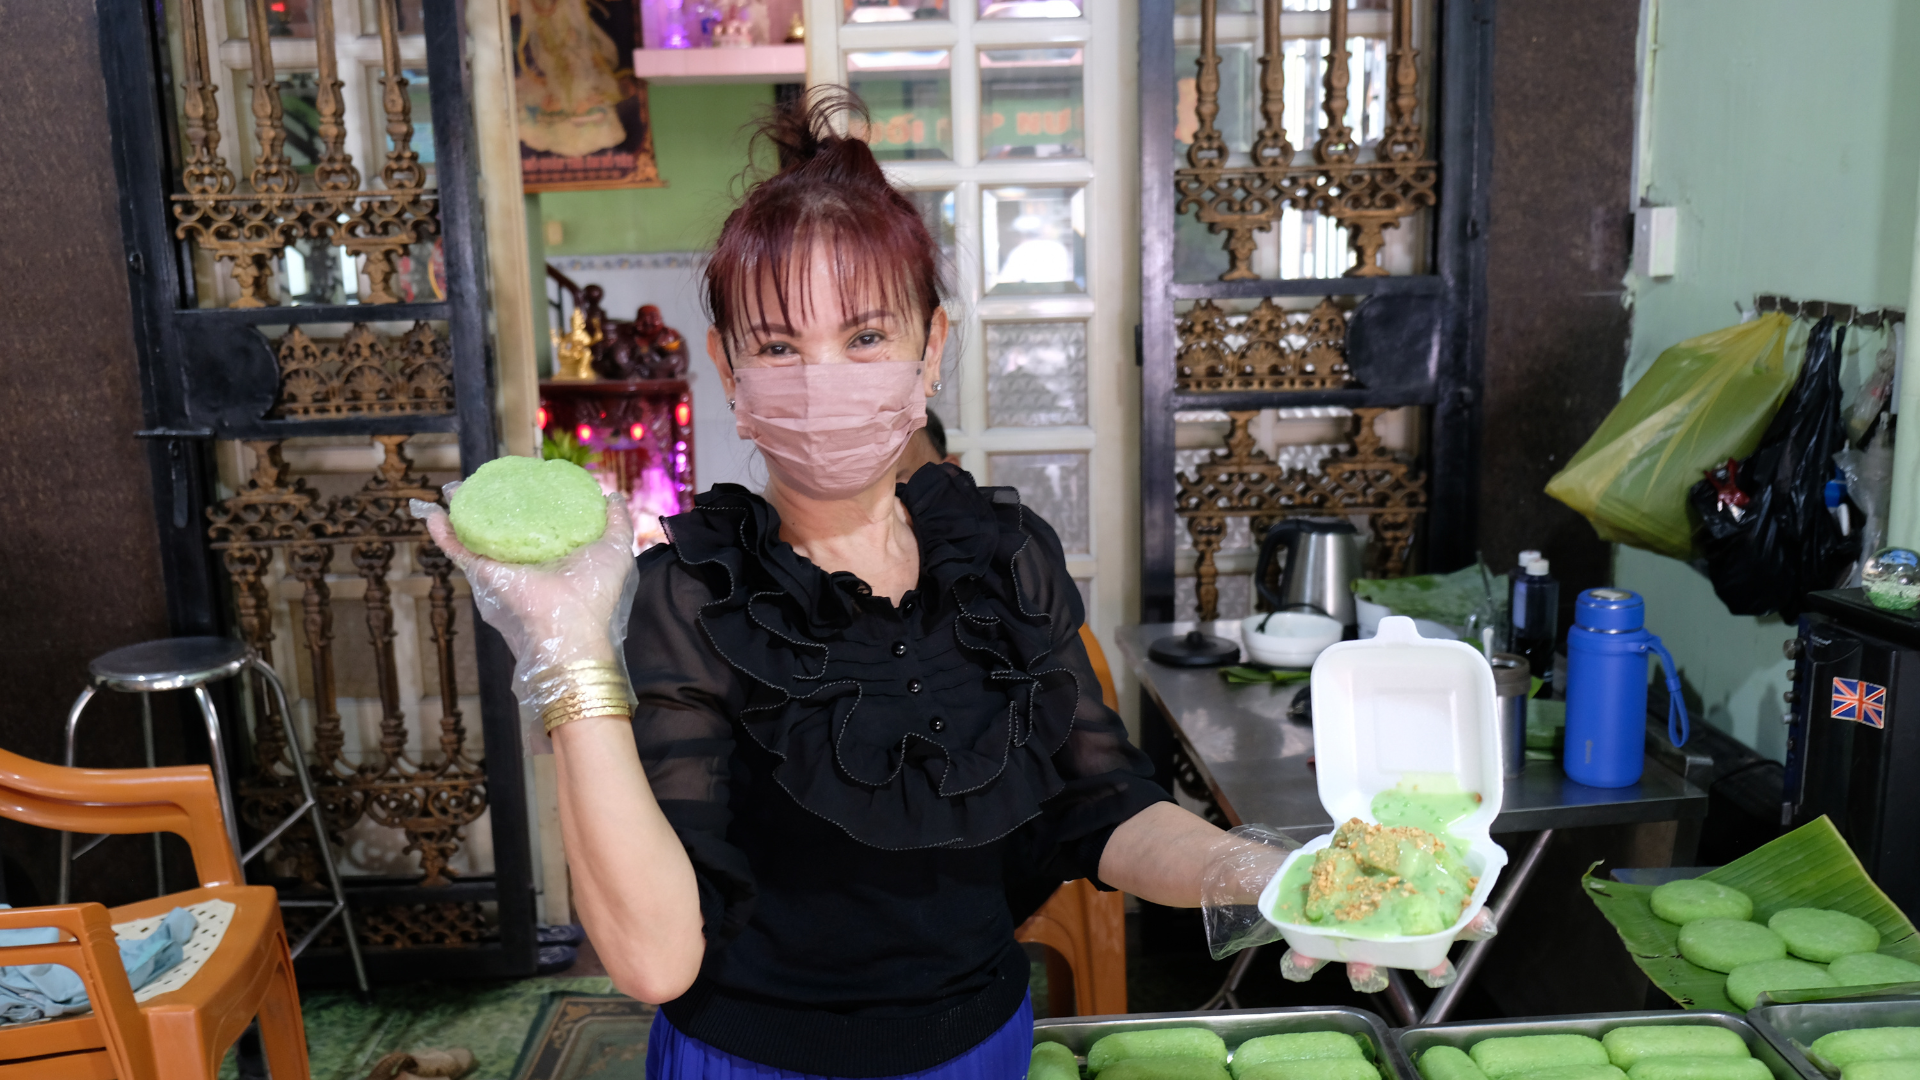 Bánh nếp nướng ăn kèm cốt dừa lá dứa xanh nõn siêu ngon tại Chợ Lớn- Ảnh 1.